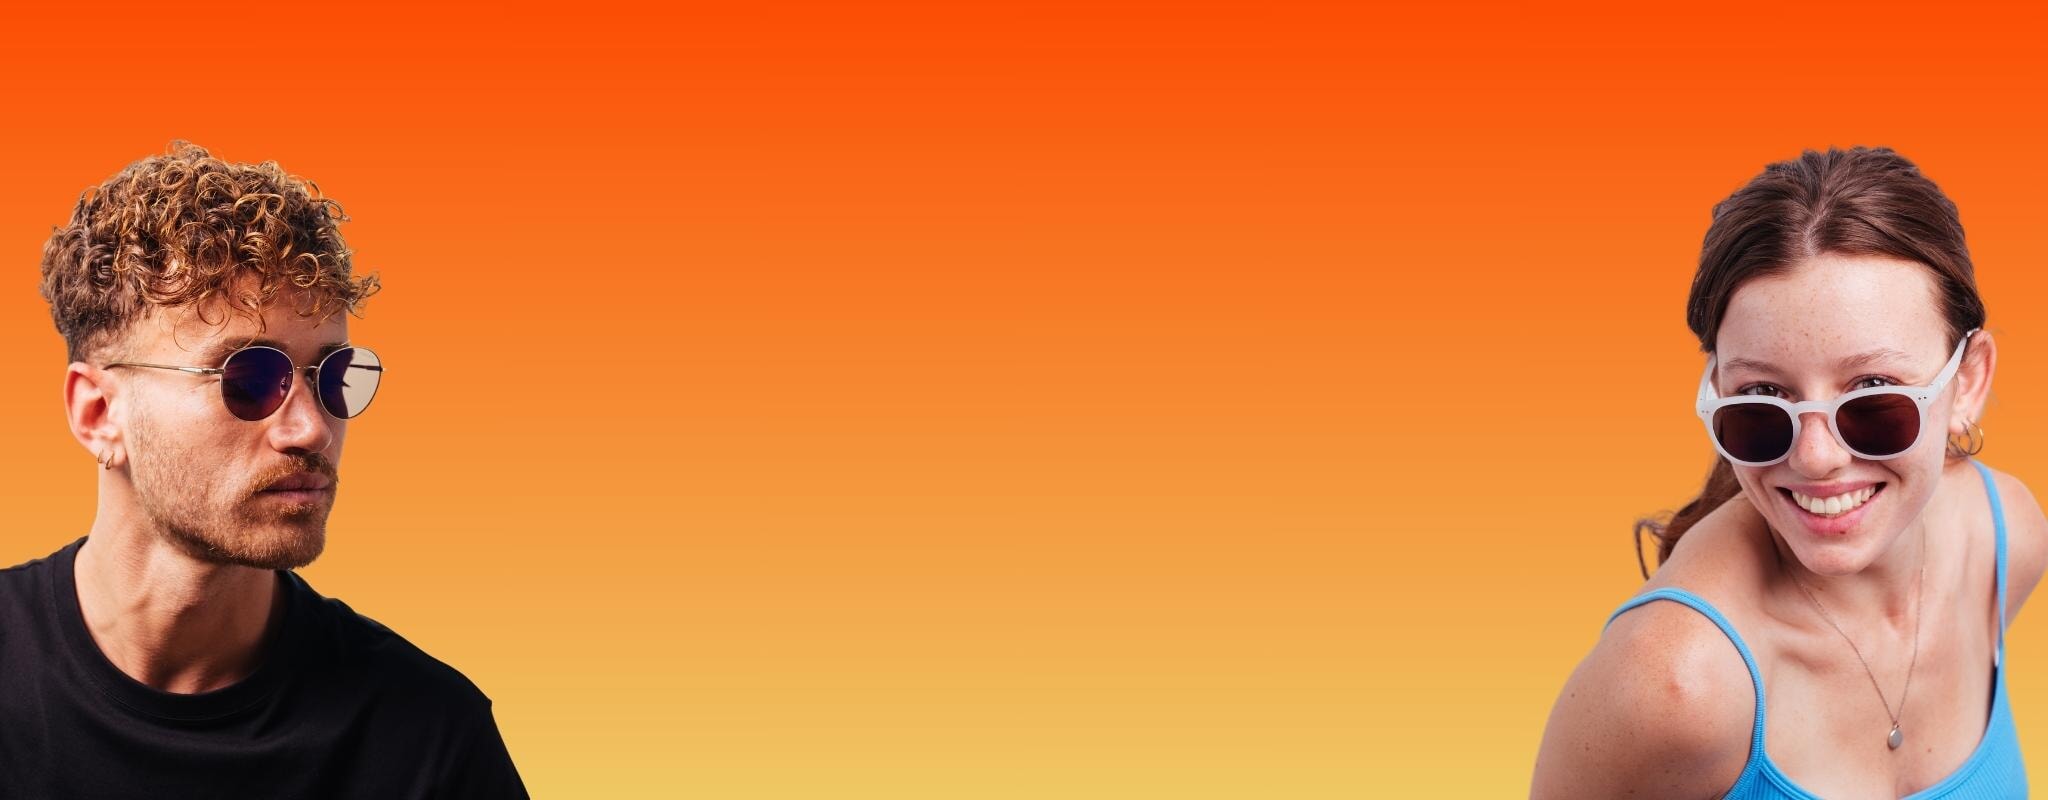 Lentes para Protección UV Filtro Naranja